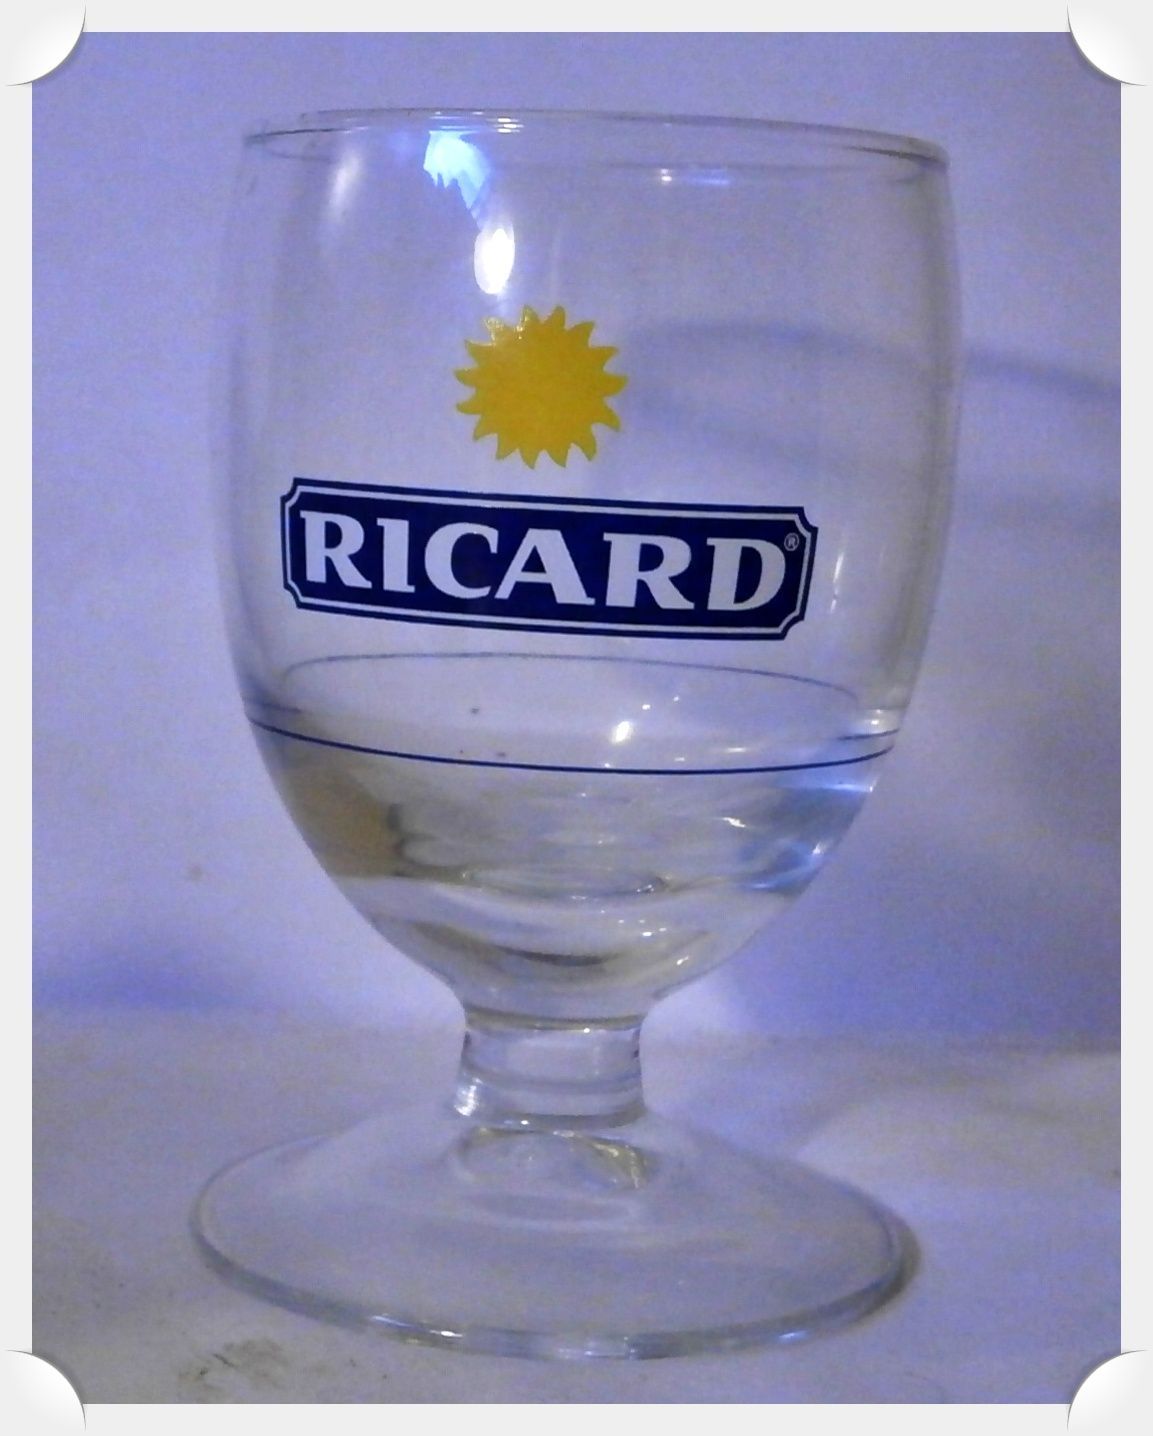 Verre Ricard (17cl)  Verre ricard, Ricard, Verre